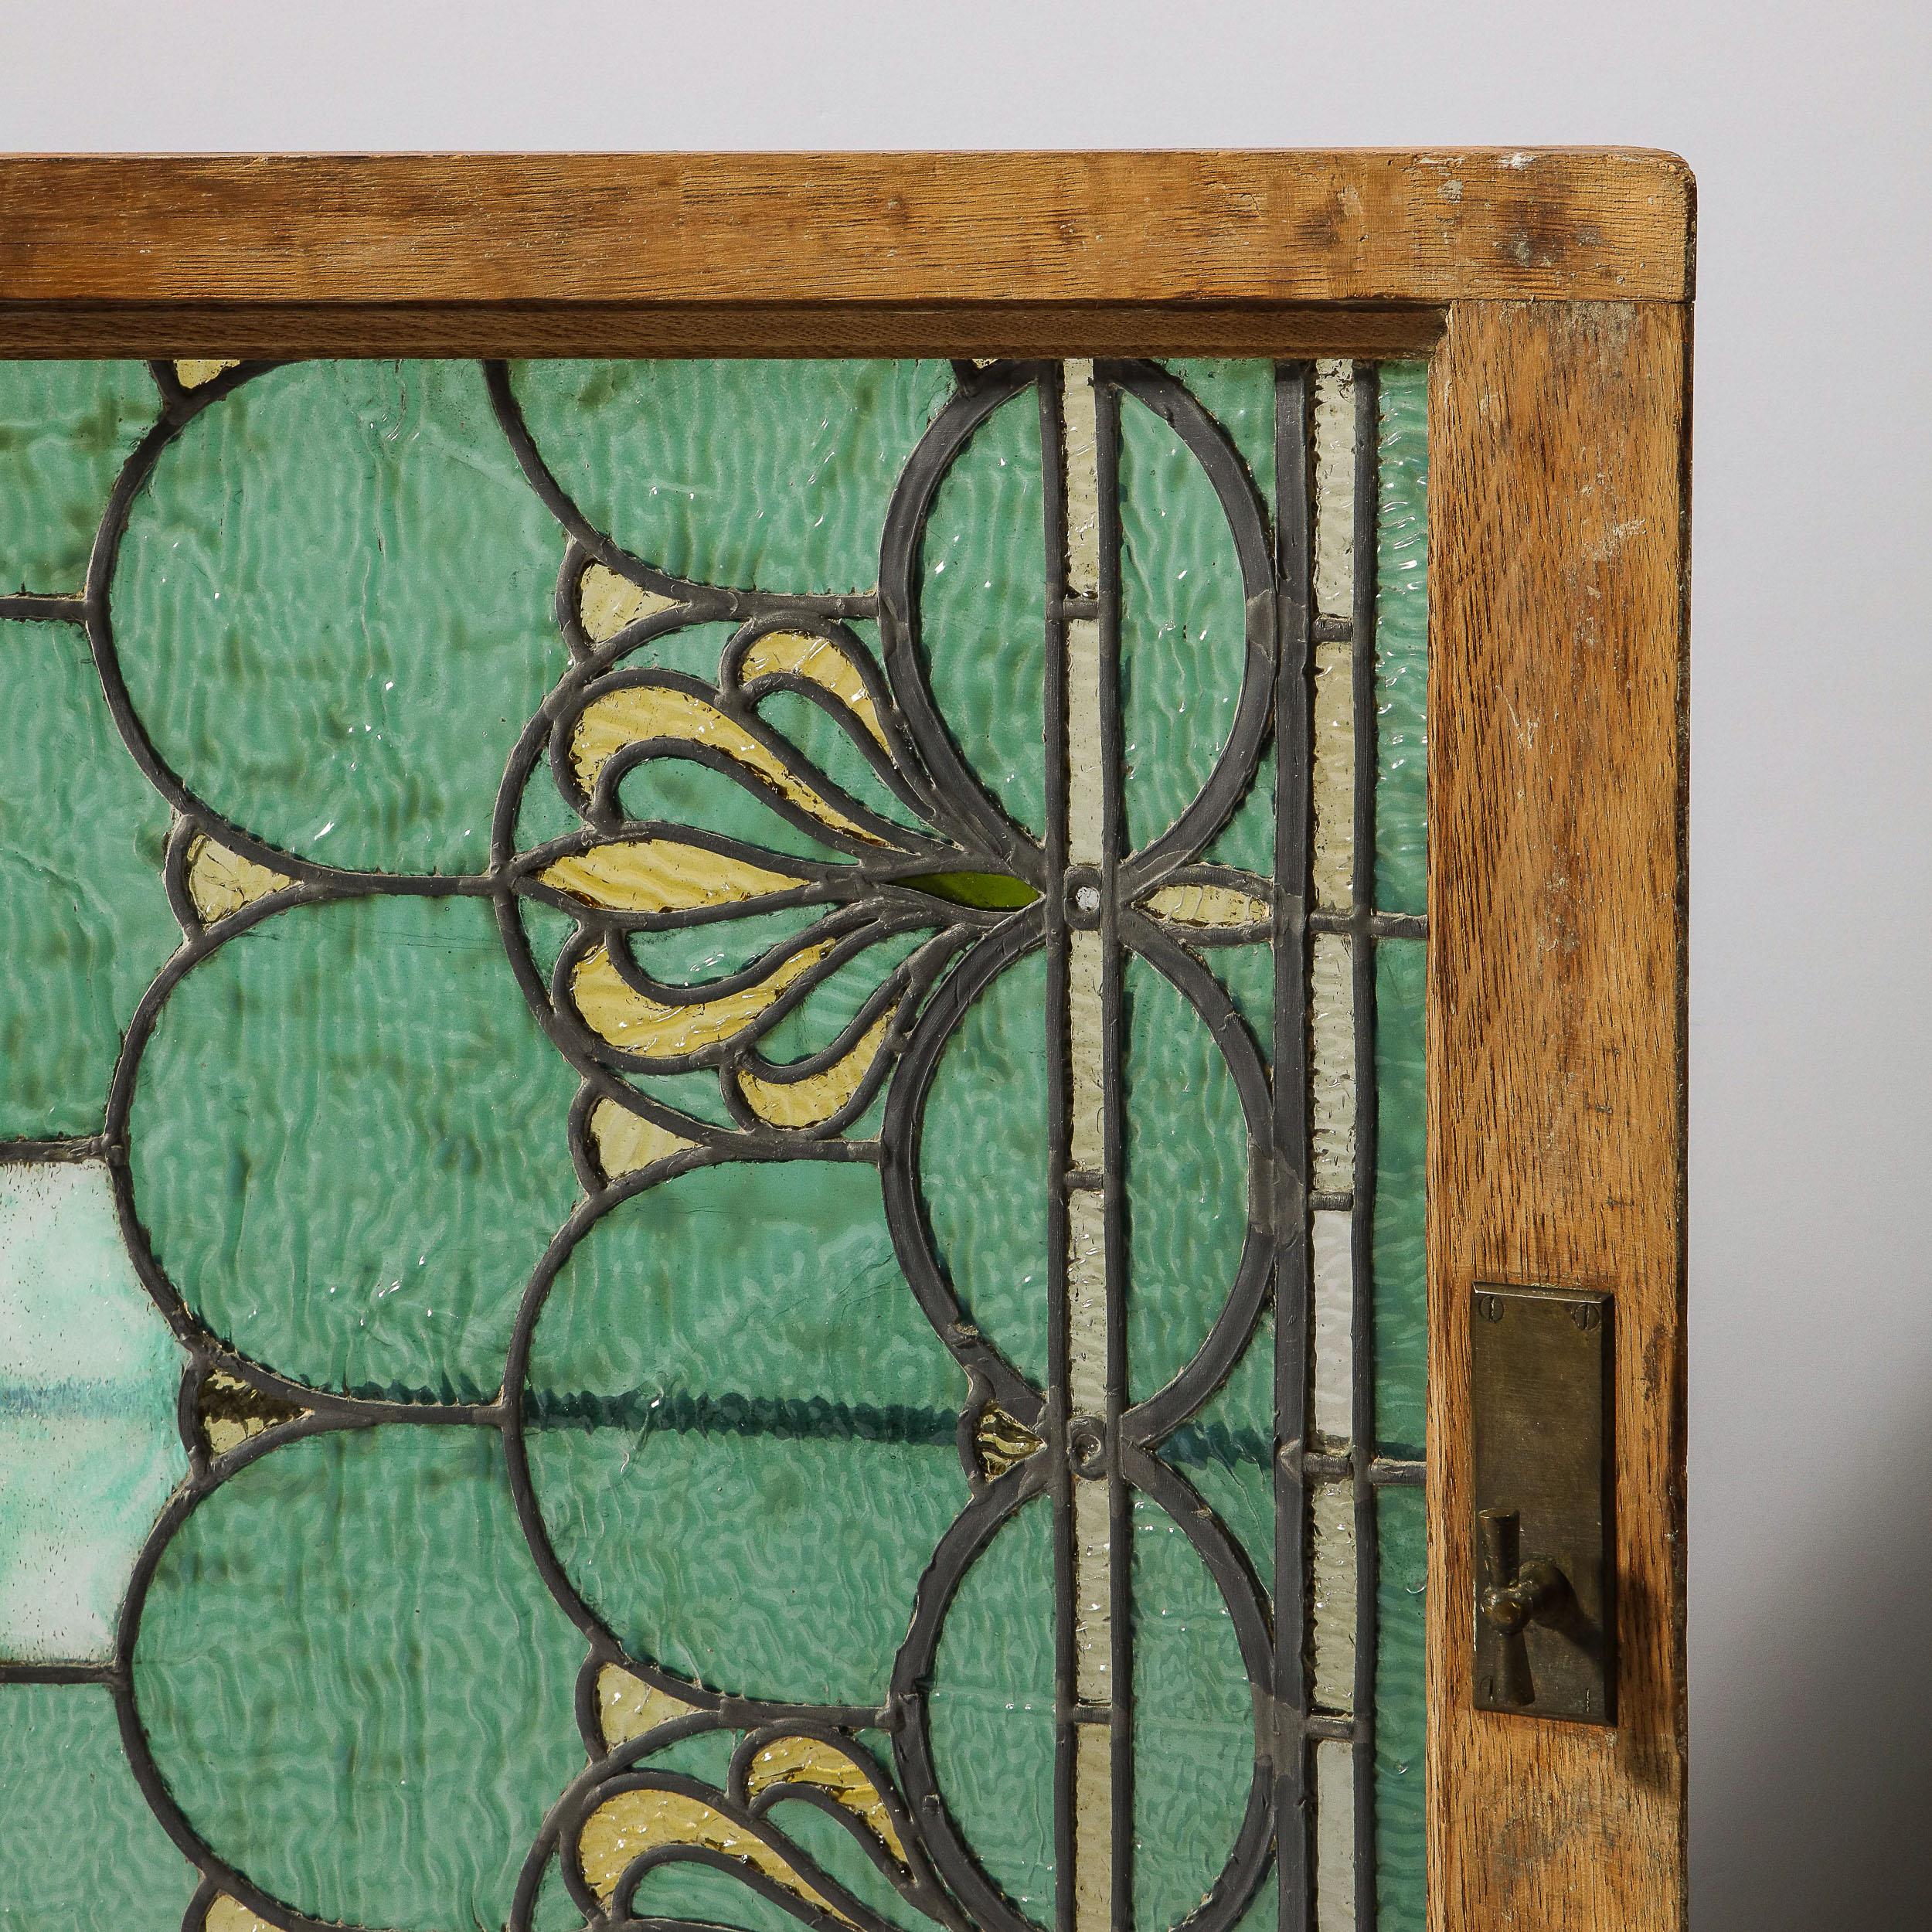 Dieses atemberaubende Jugendstilfenster/-paneel wurde 1907 in den Vereinigten Staaten realisiert und Tiffany & Co. zugeschrieben. Das Stück zeigt ein Mosaik aus ineinander greifenden Demilune-Bögen in melierten Meerschaum- und Smaragdtönen mit